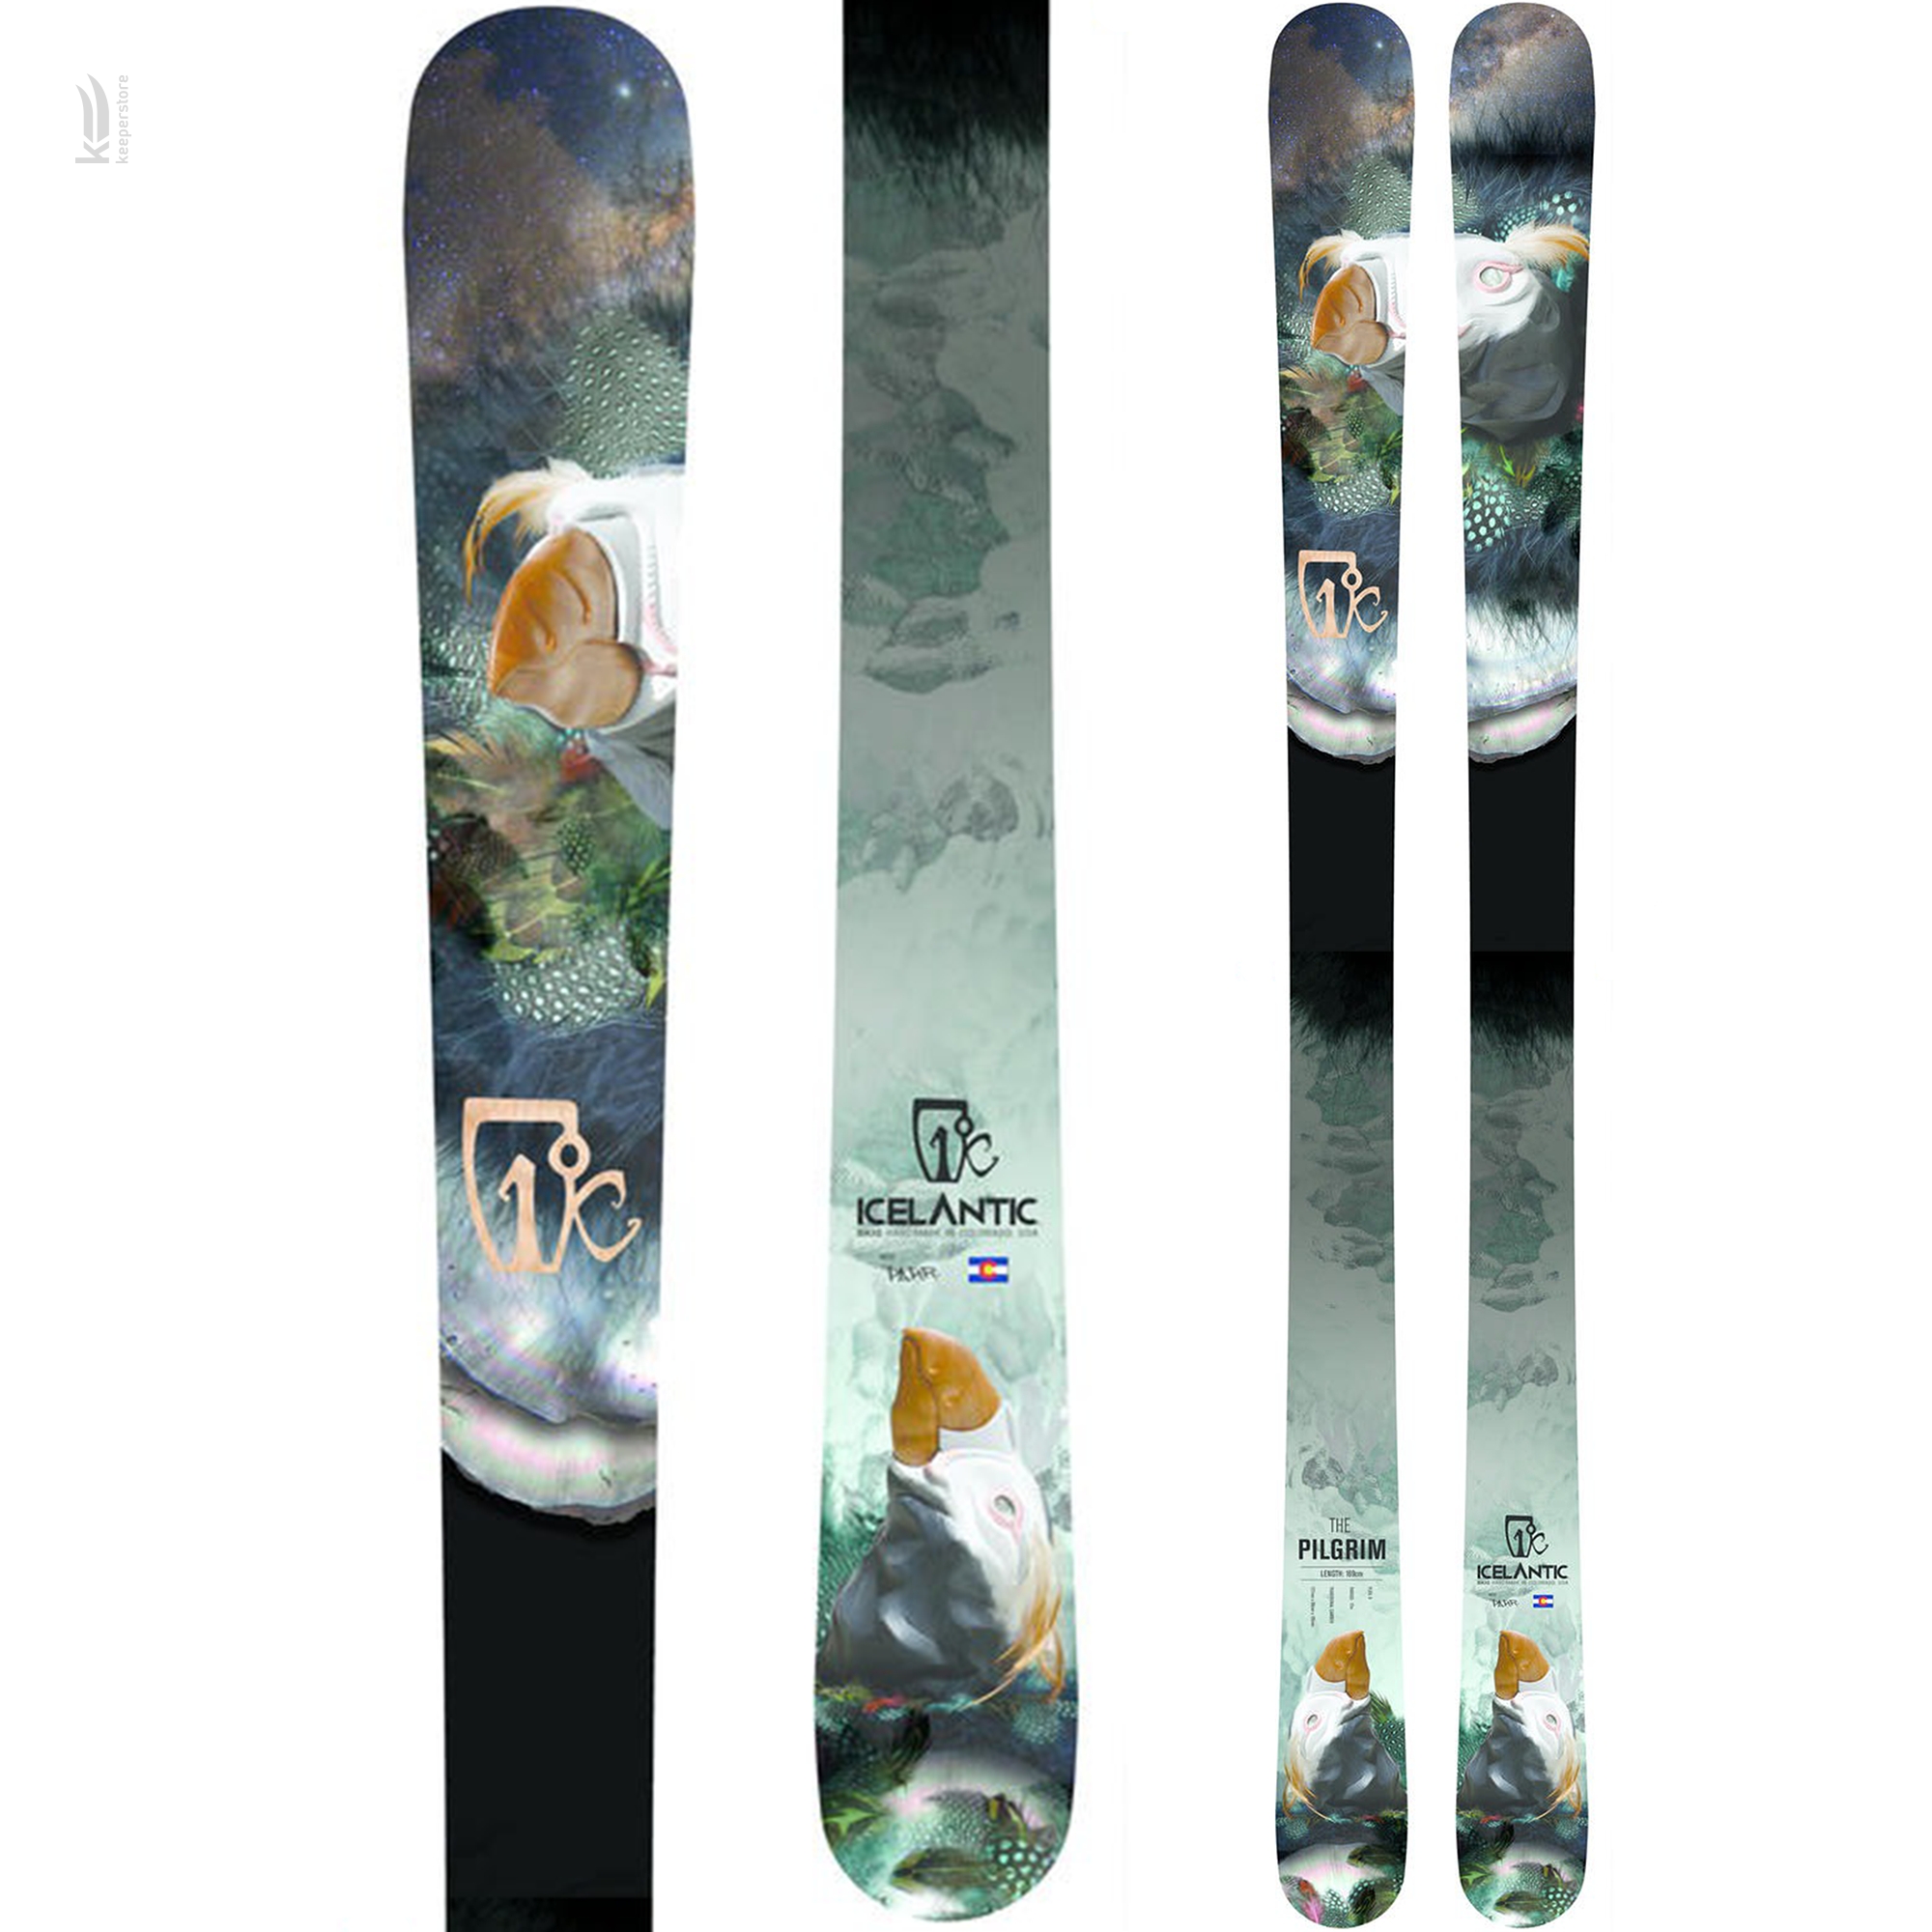 Лыжи для новичков Icelantic Pilgrim 90 2014/2015 169cm